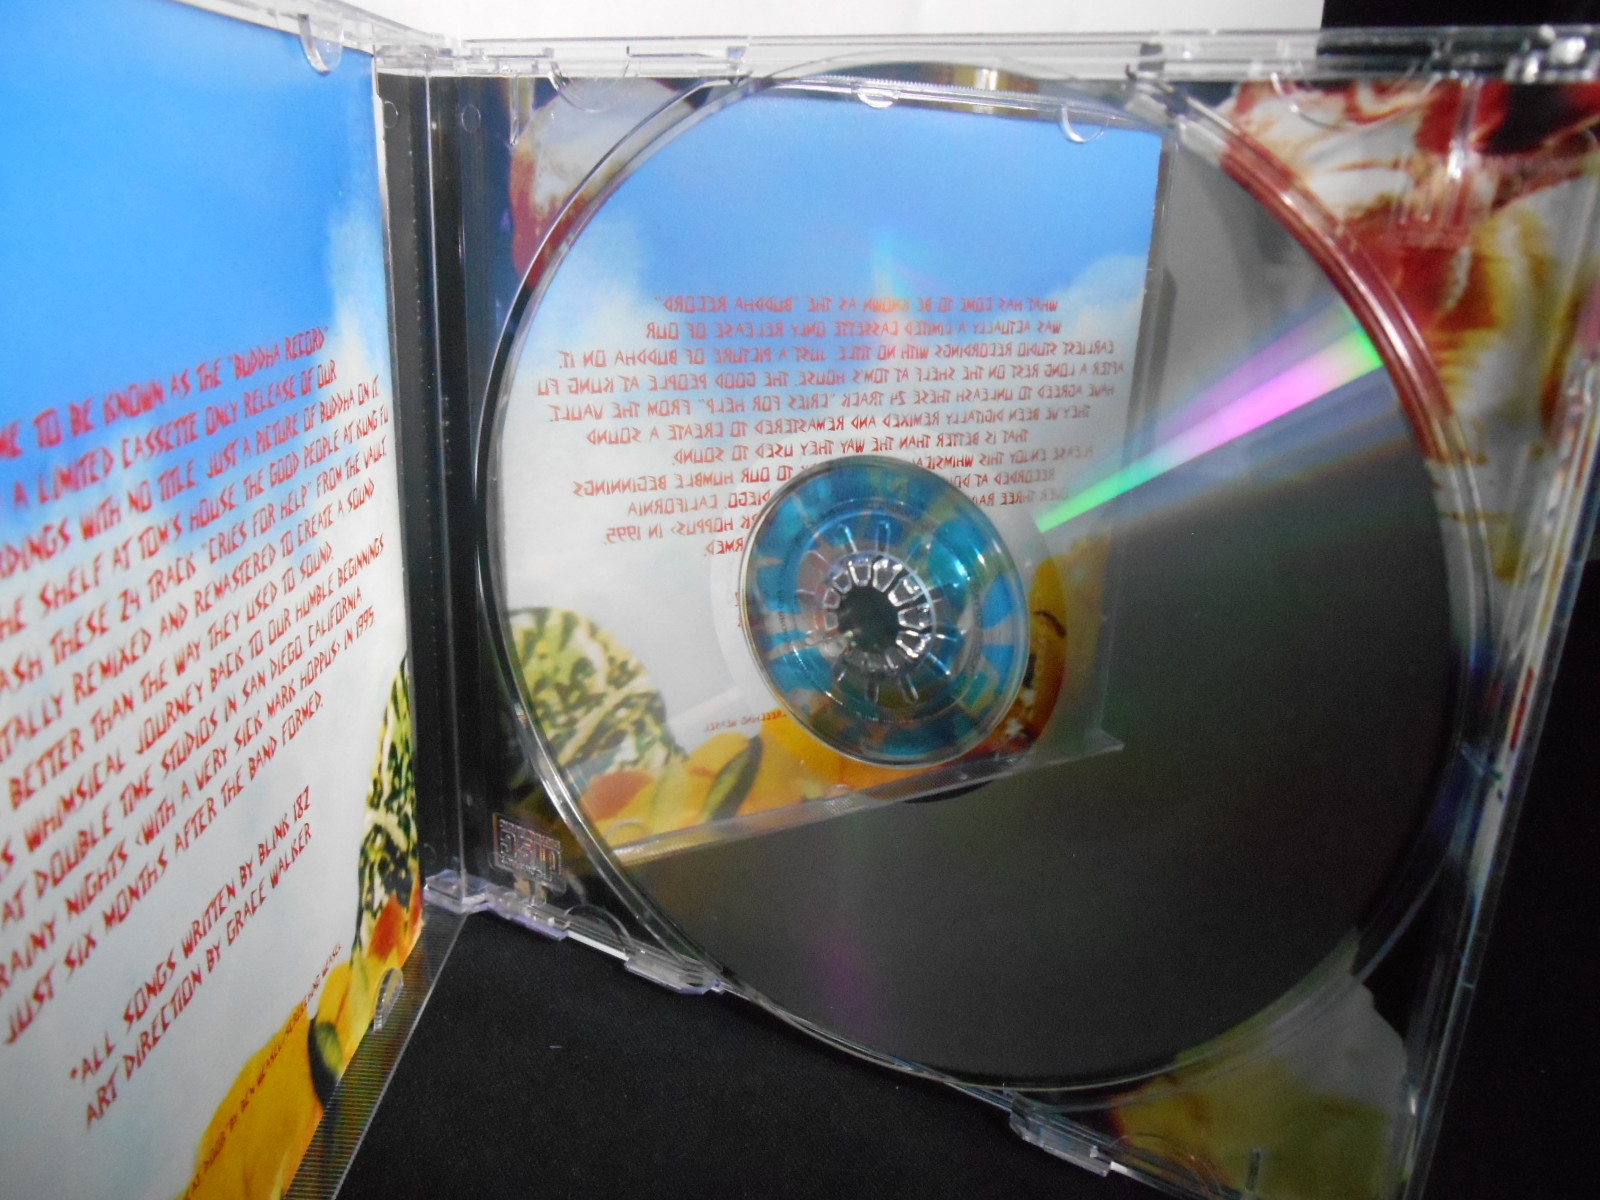 CD - Blink 182 - Buddha (usa)